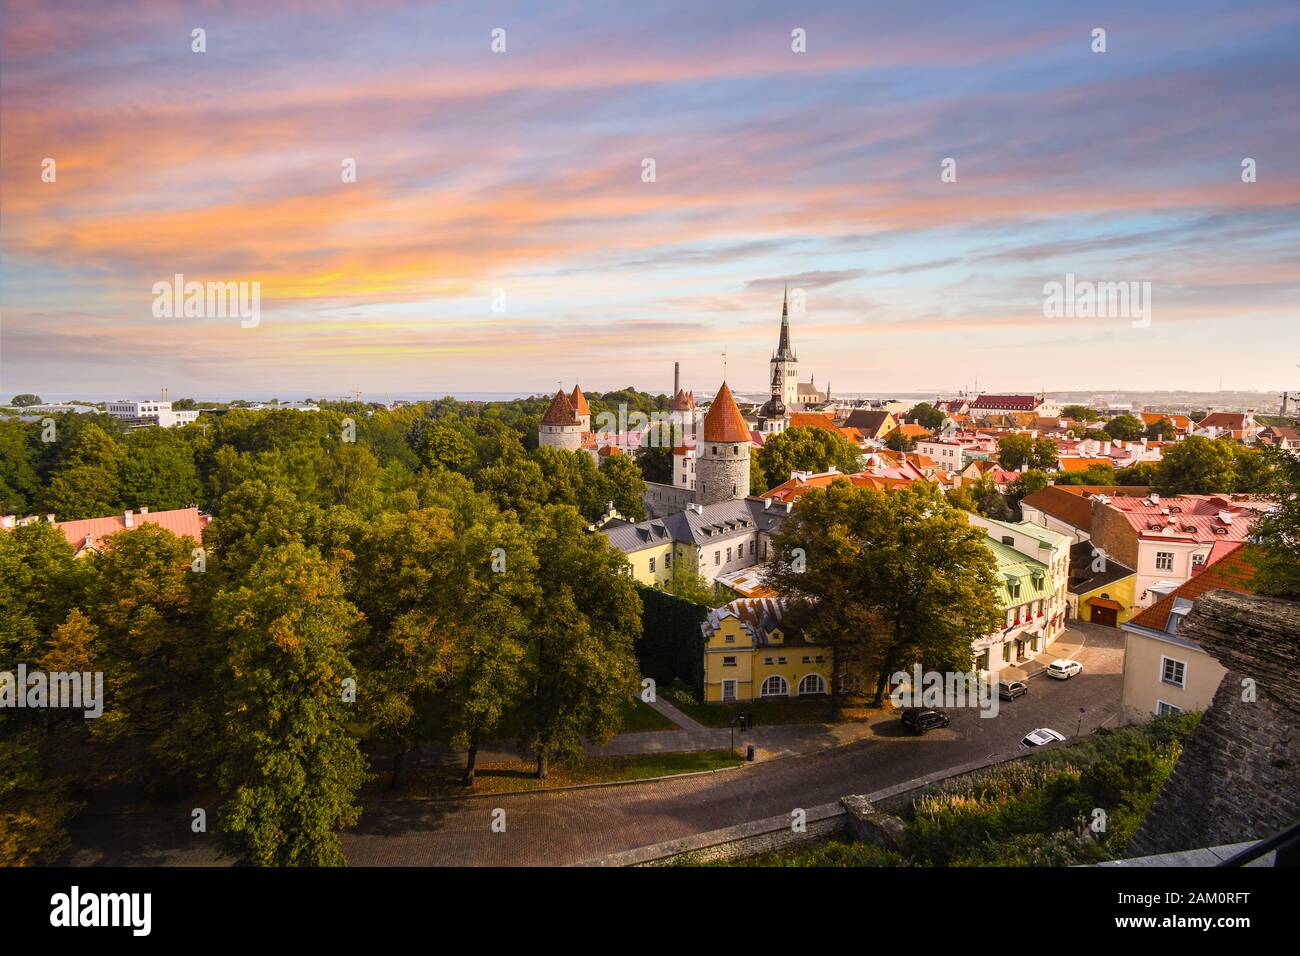 Un coucher de soleil coloré au-dessus de la vieille ville médiévale de Tallinn Estonie, vue de la ville supérieure de Toompea Hill dans la région européenne de la Baltique. Banque D'Images